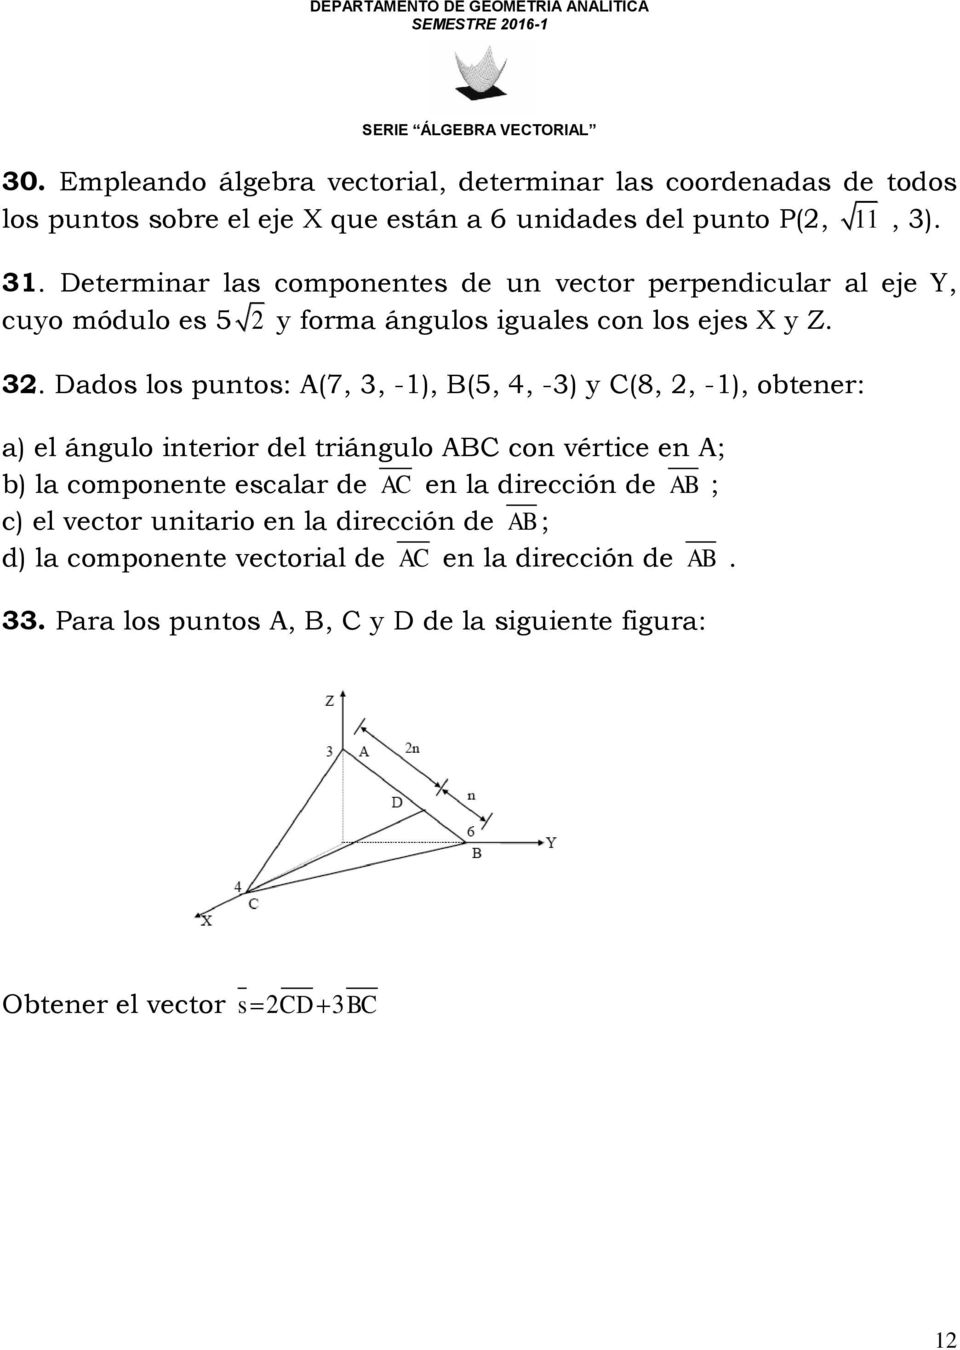 Dados los puntos: A(7, 3, -1), B(5, 4, -3) y C(8, 2, -1), obtener: a) el ángulo interior del triángulo ABC con vértice en A; b) la componente escalar de AC en